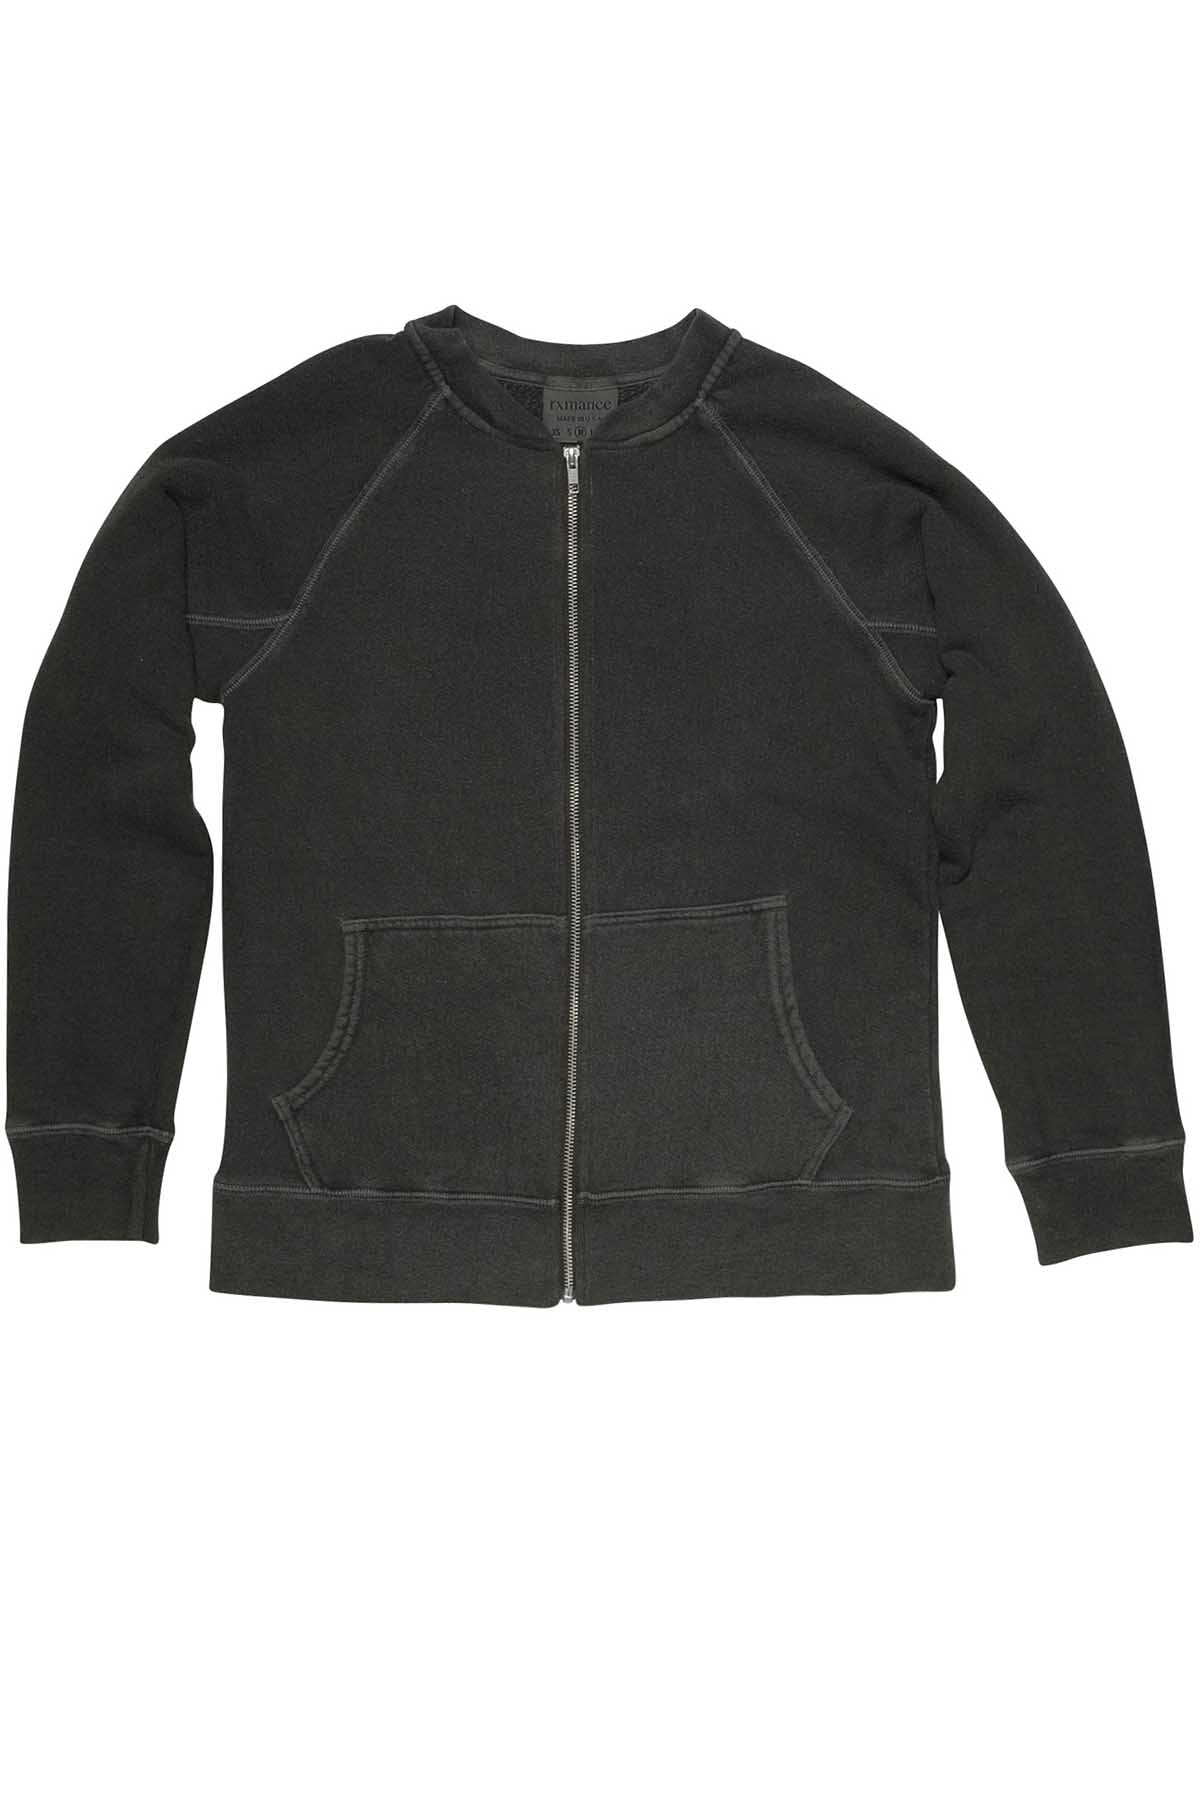 Rxmance Unisex Vintage Black Zipper Jacket